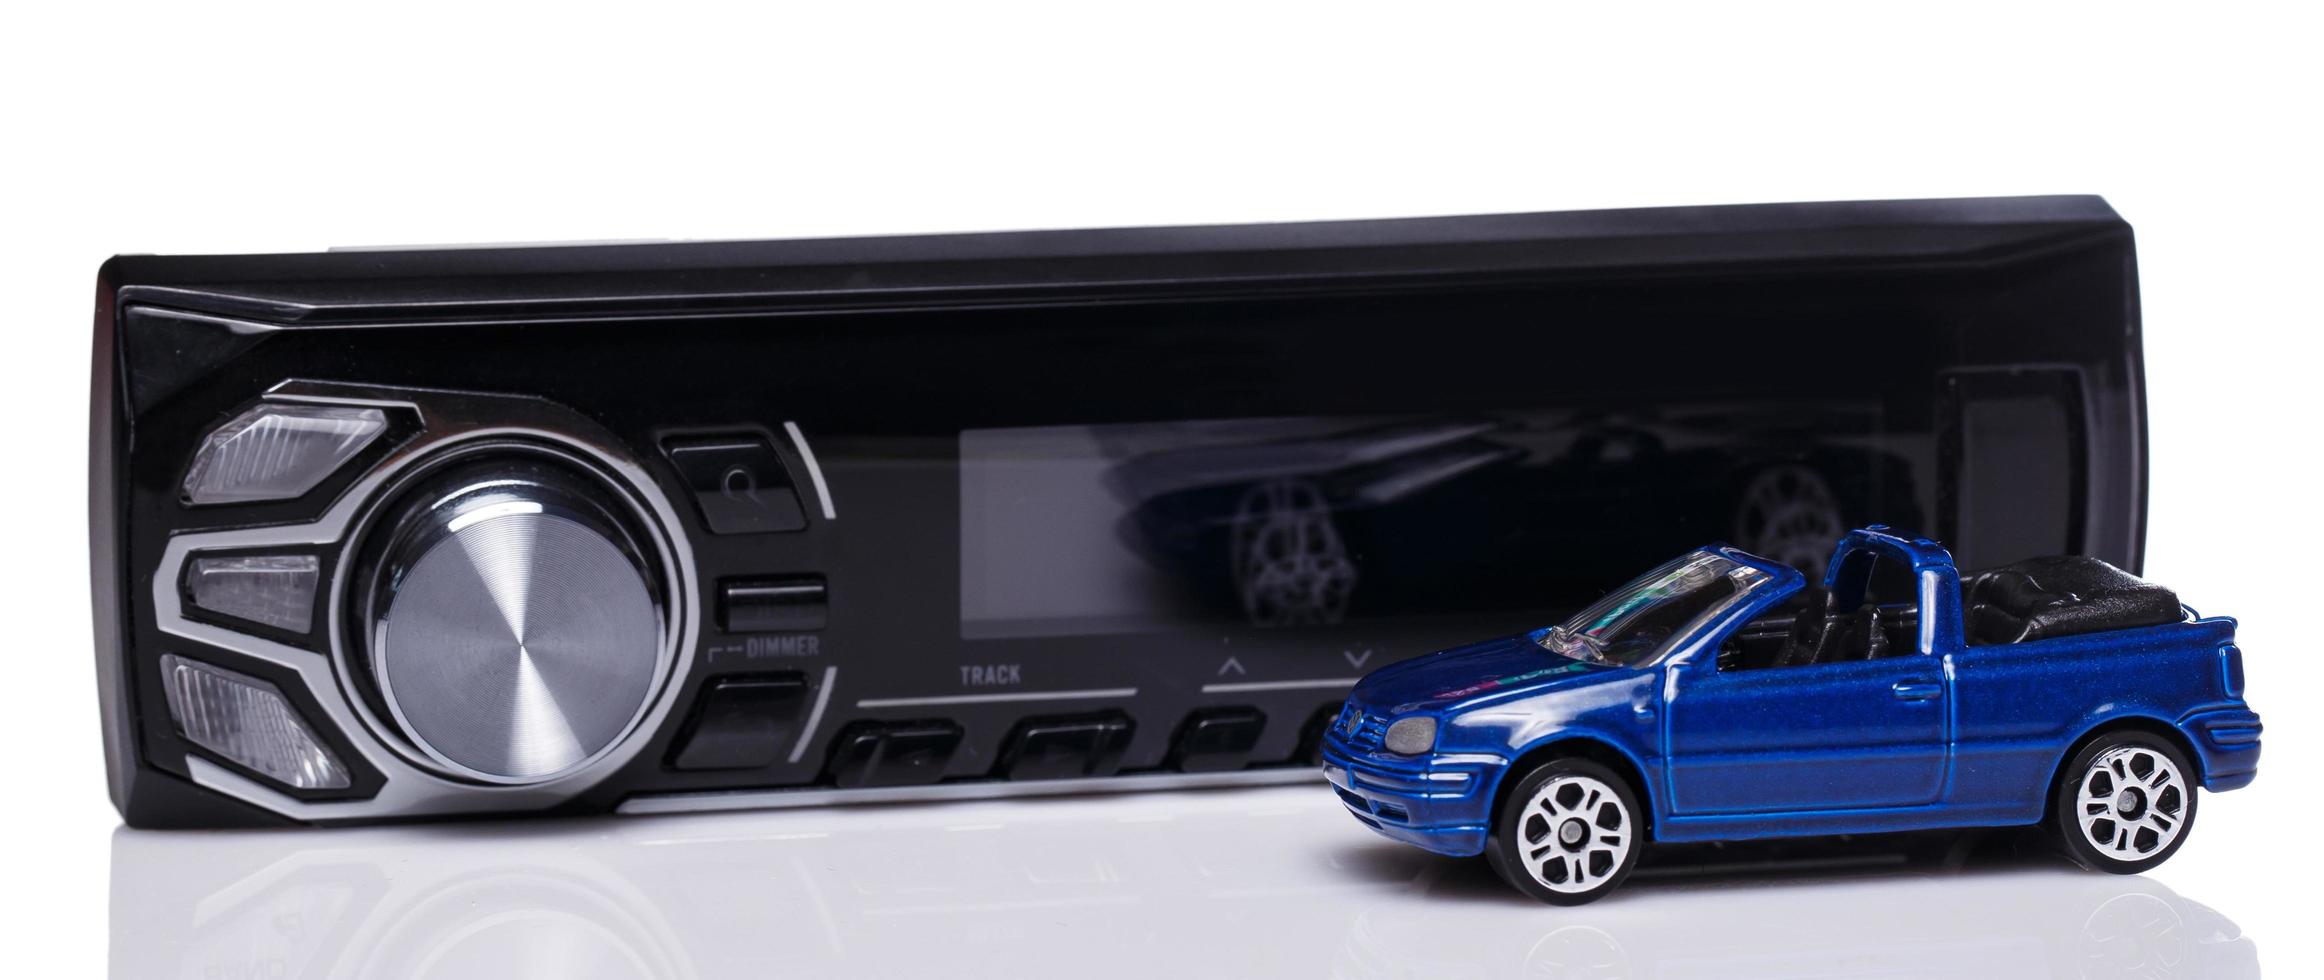 système audio de voiture et véhicule jouet photo